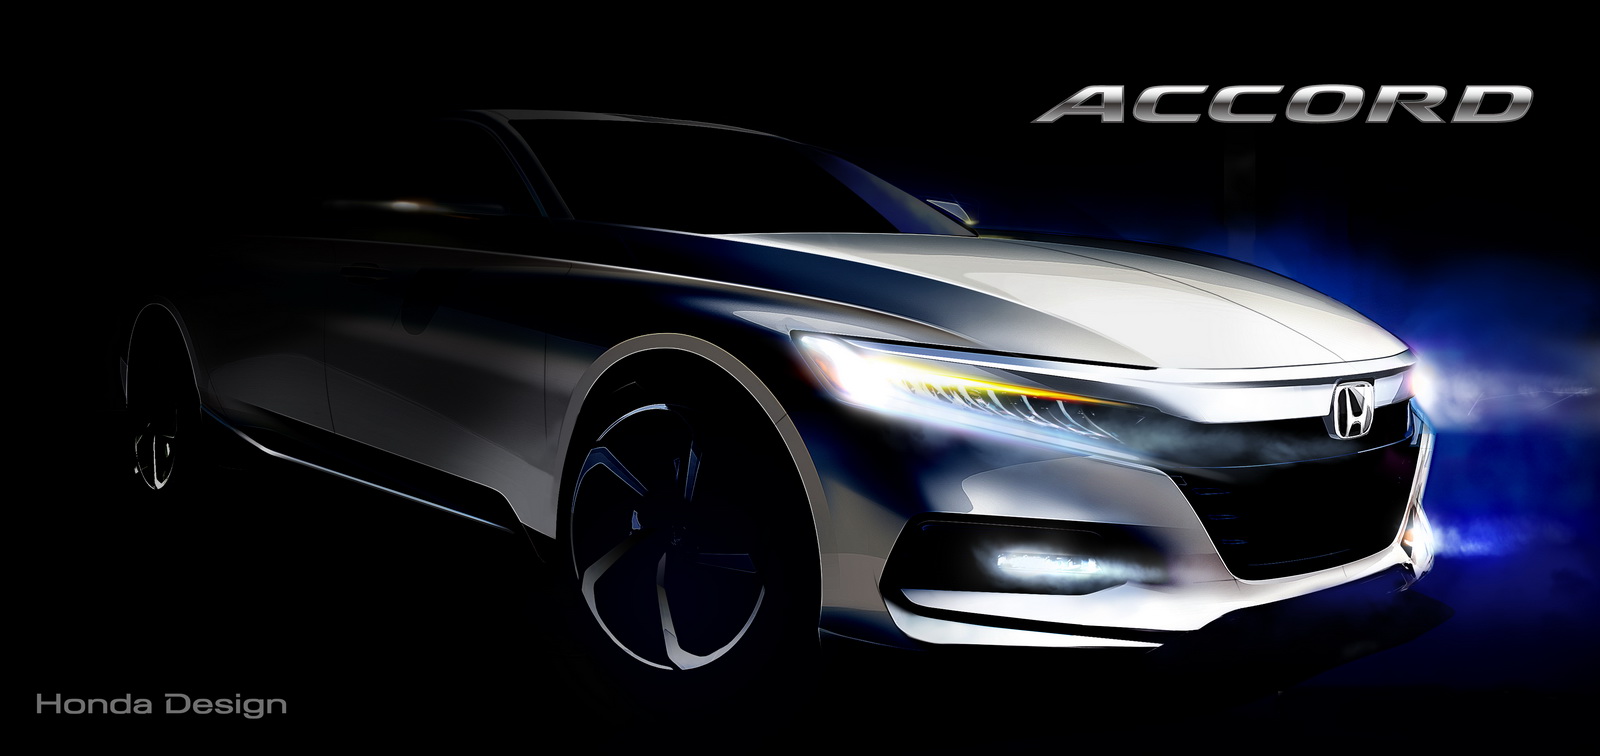 Honda Accord thế hệ mới lộ bản phác thảo trước ngày ra mắt